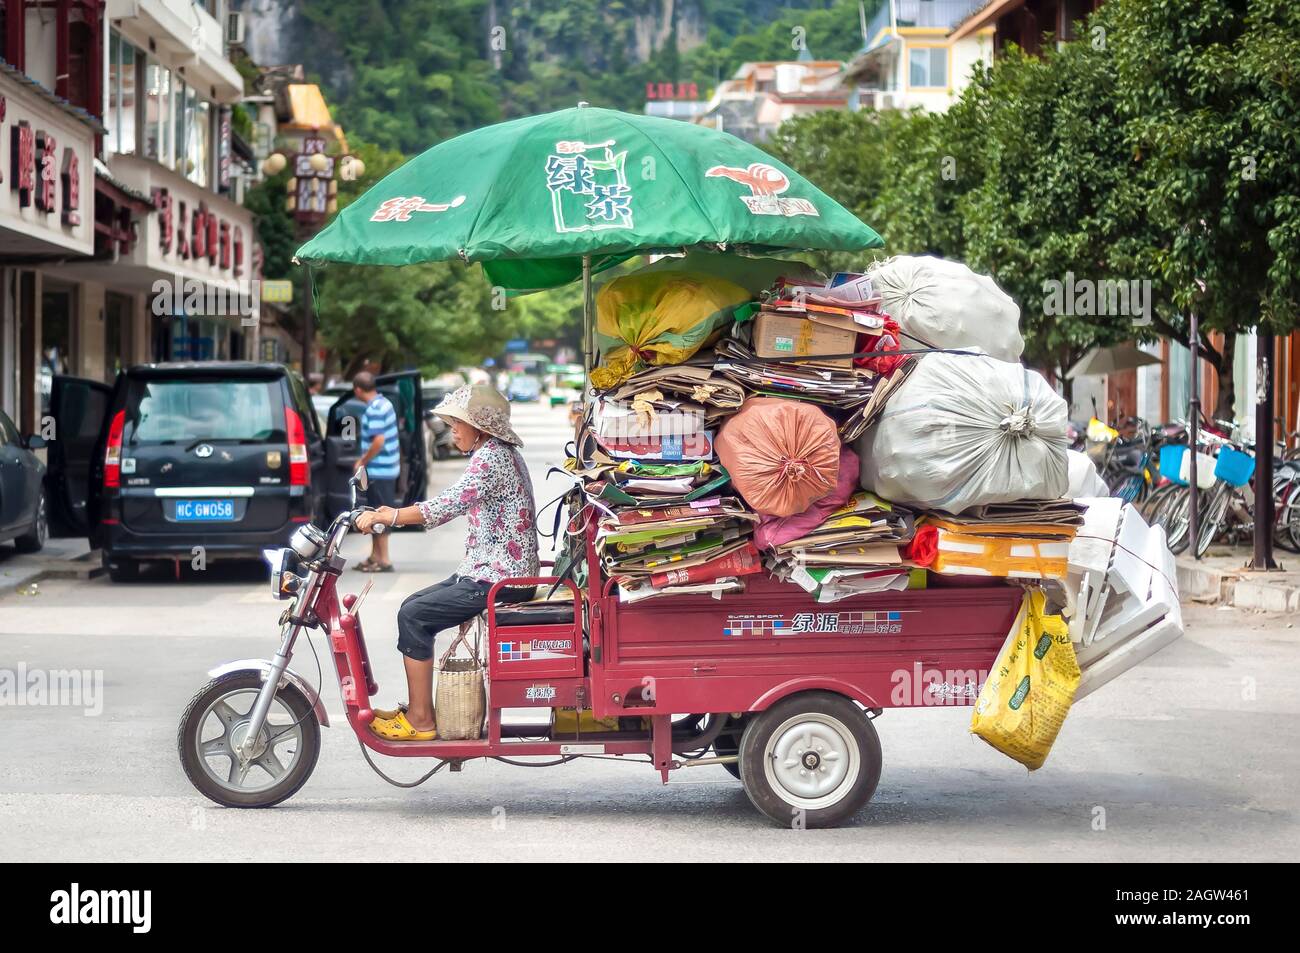 Hangzhou, Chine - 19 août 10, 2013 - Petit camion surchargé de sacs et cartons de bouteilles de plastique dans le sud-ouest de la ville de Yangshuo, Chine Banque D'Images